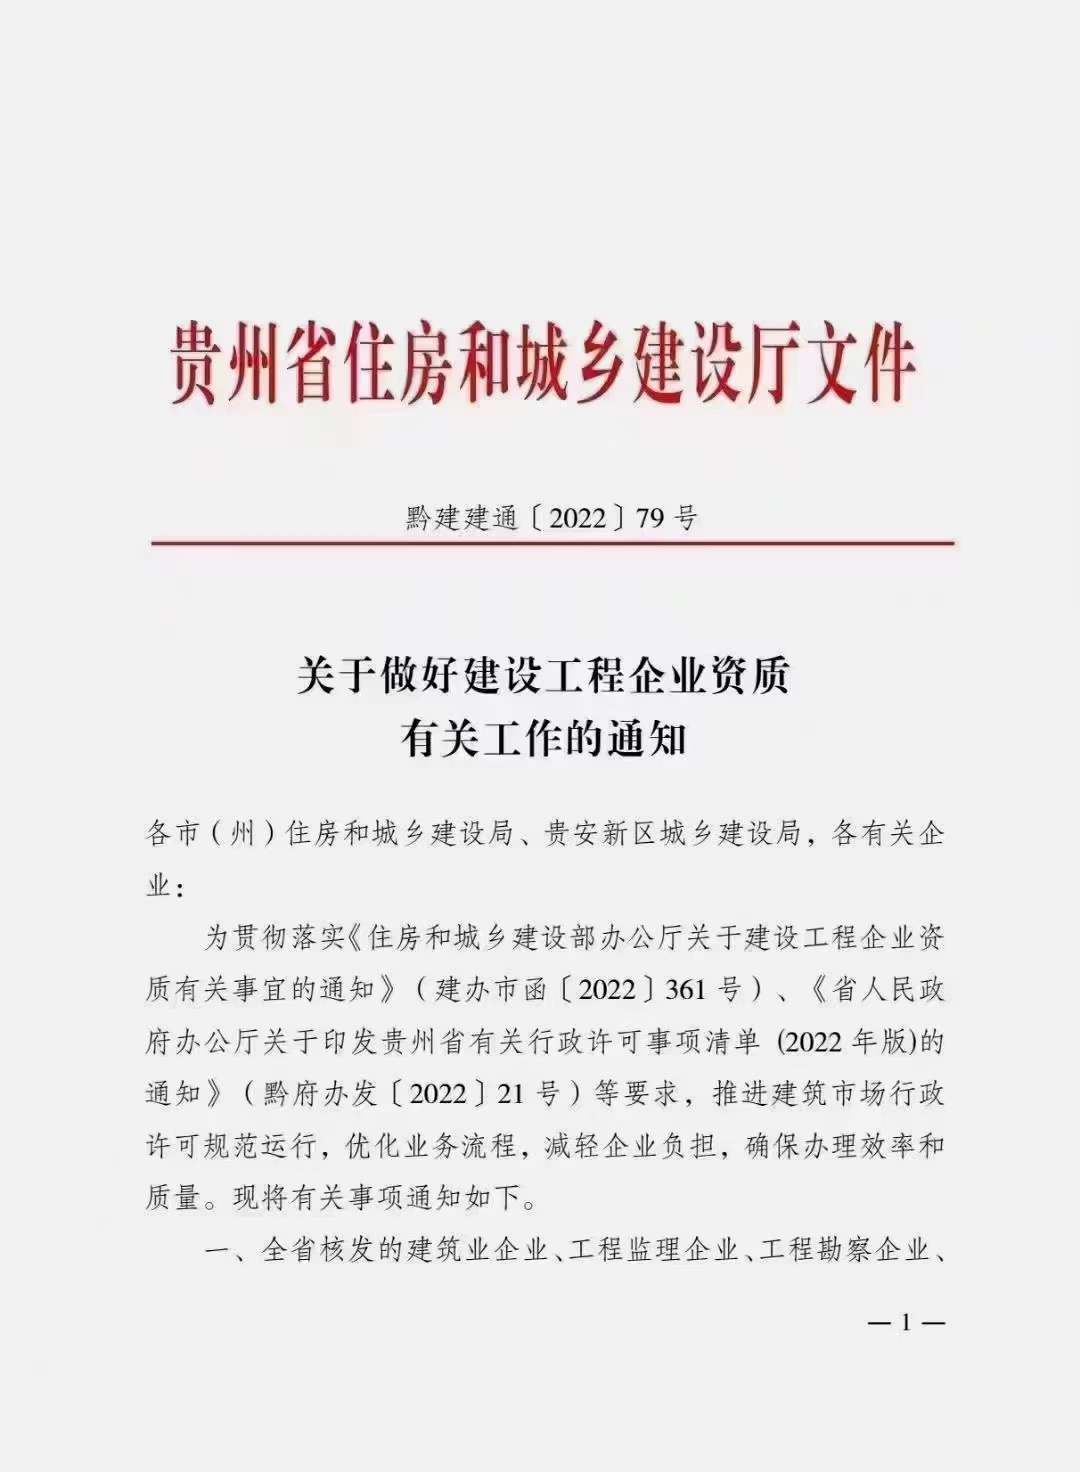 贵州省住建厅：延长建设工程企业资质有效期，统一延期至2023年12月31日